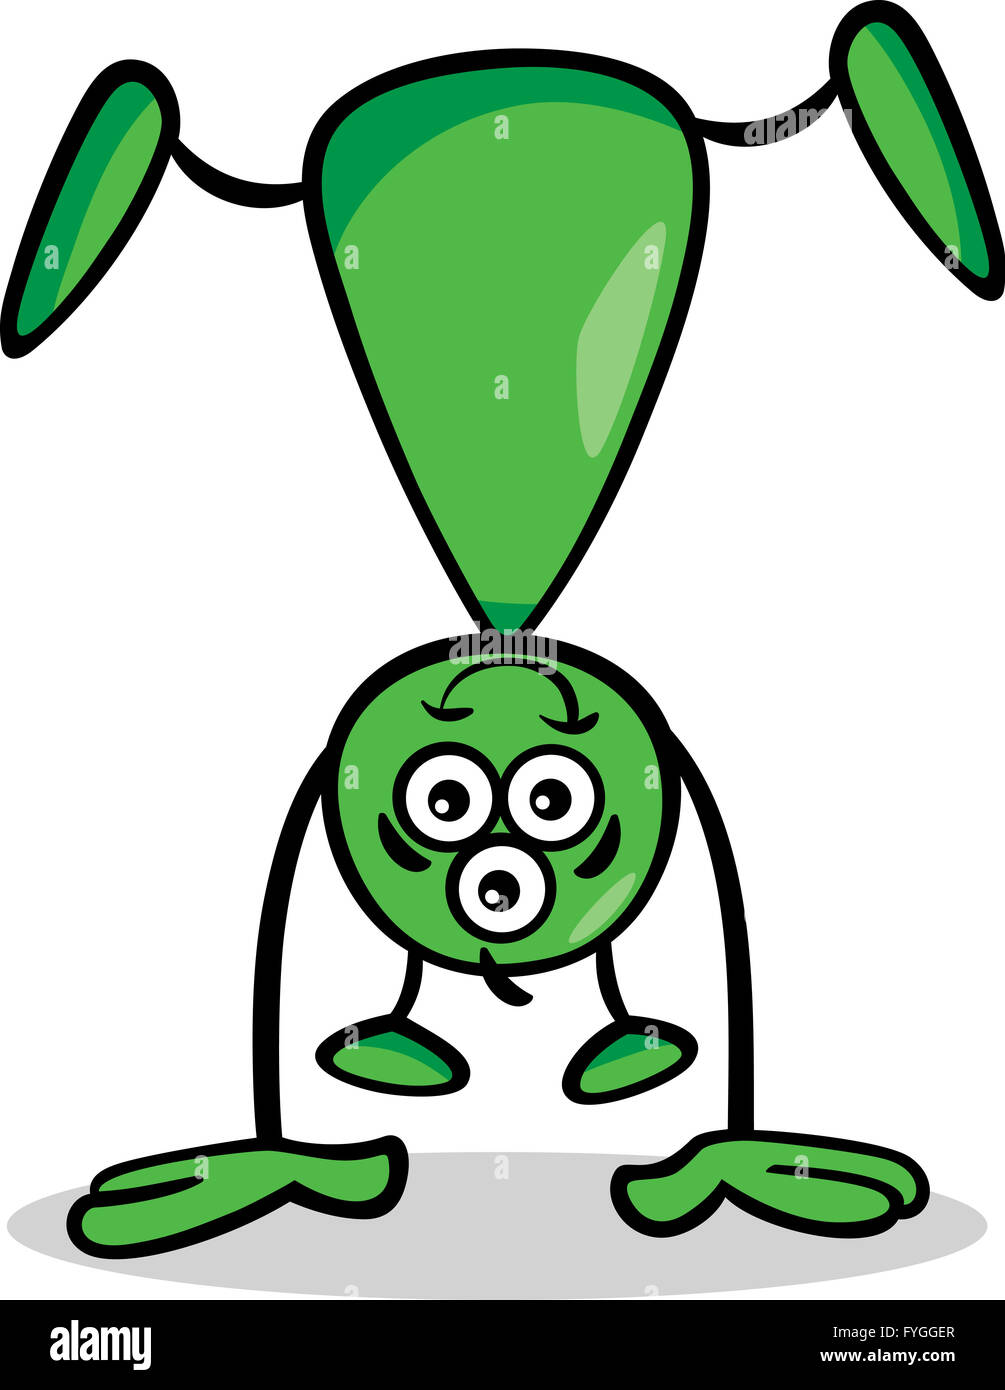 Alien ou illustration cartoon martienne Banque D'Images